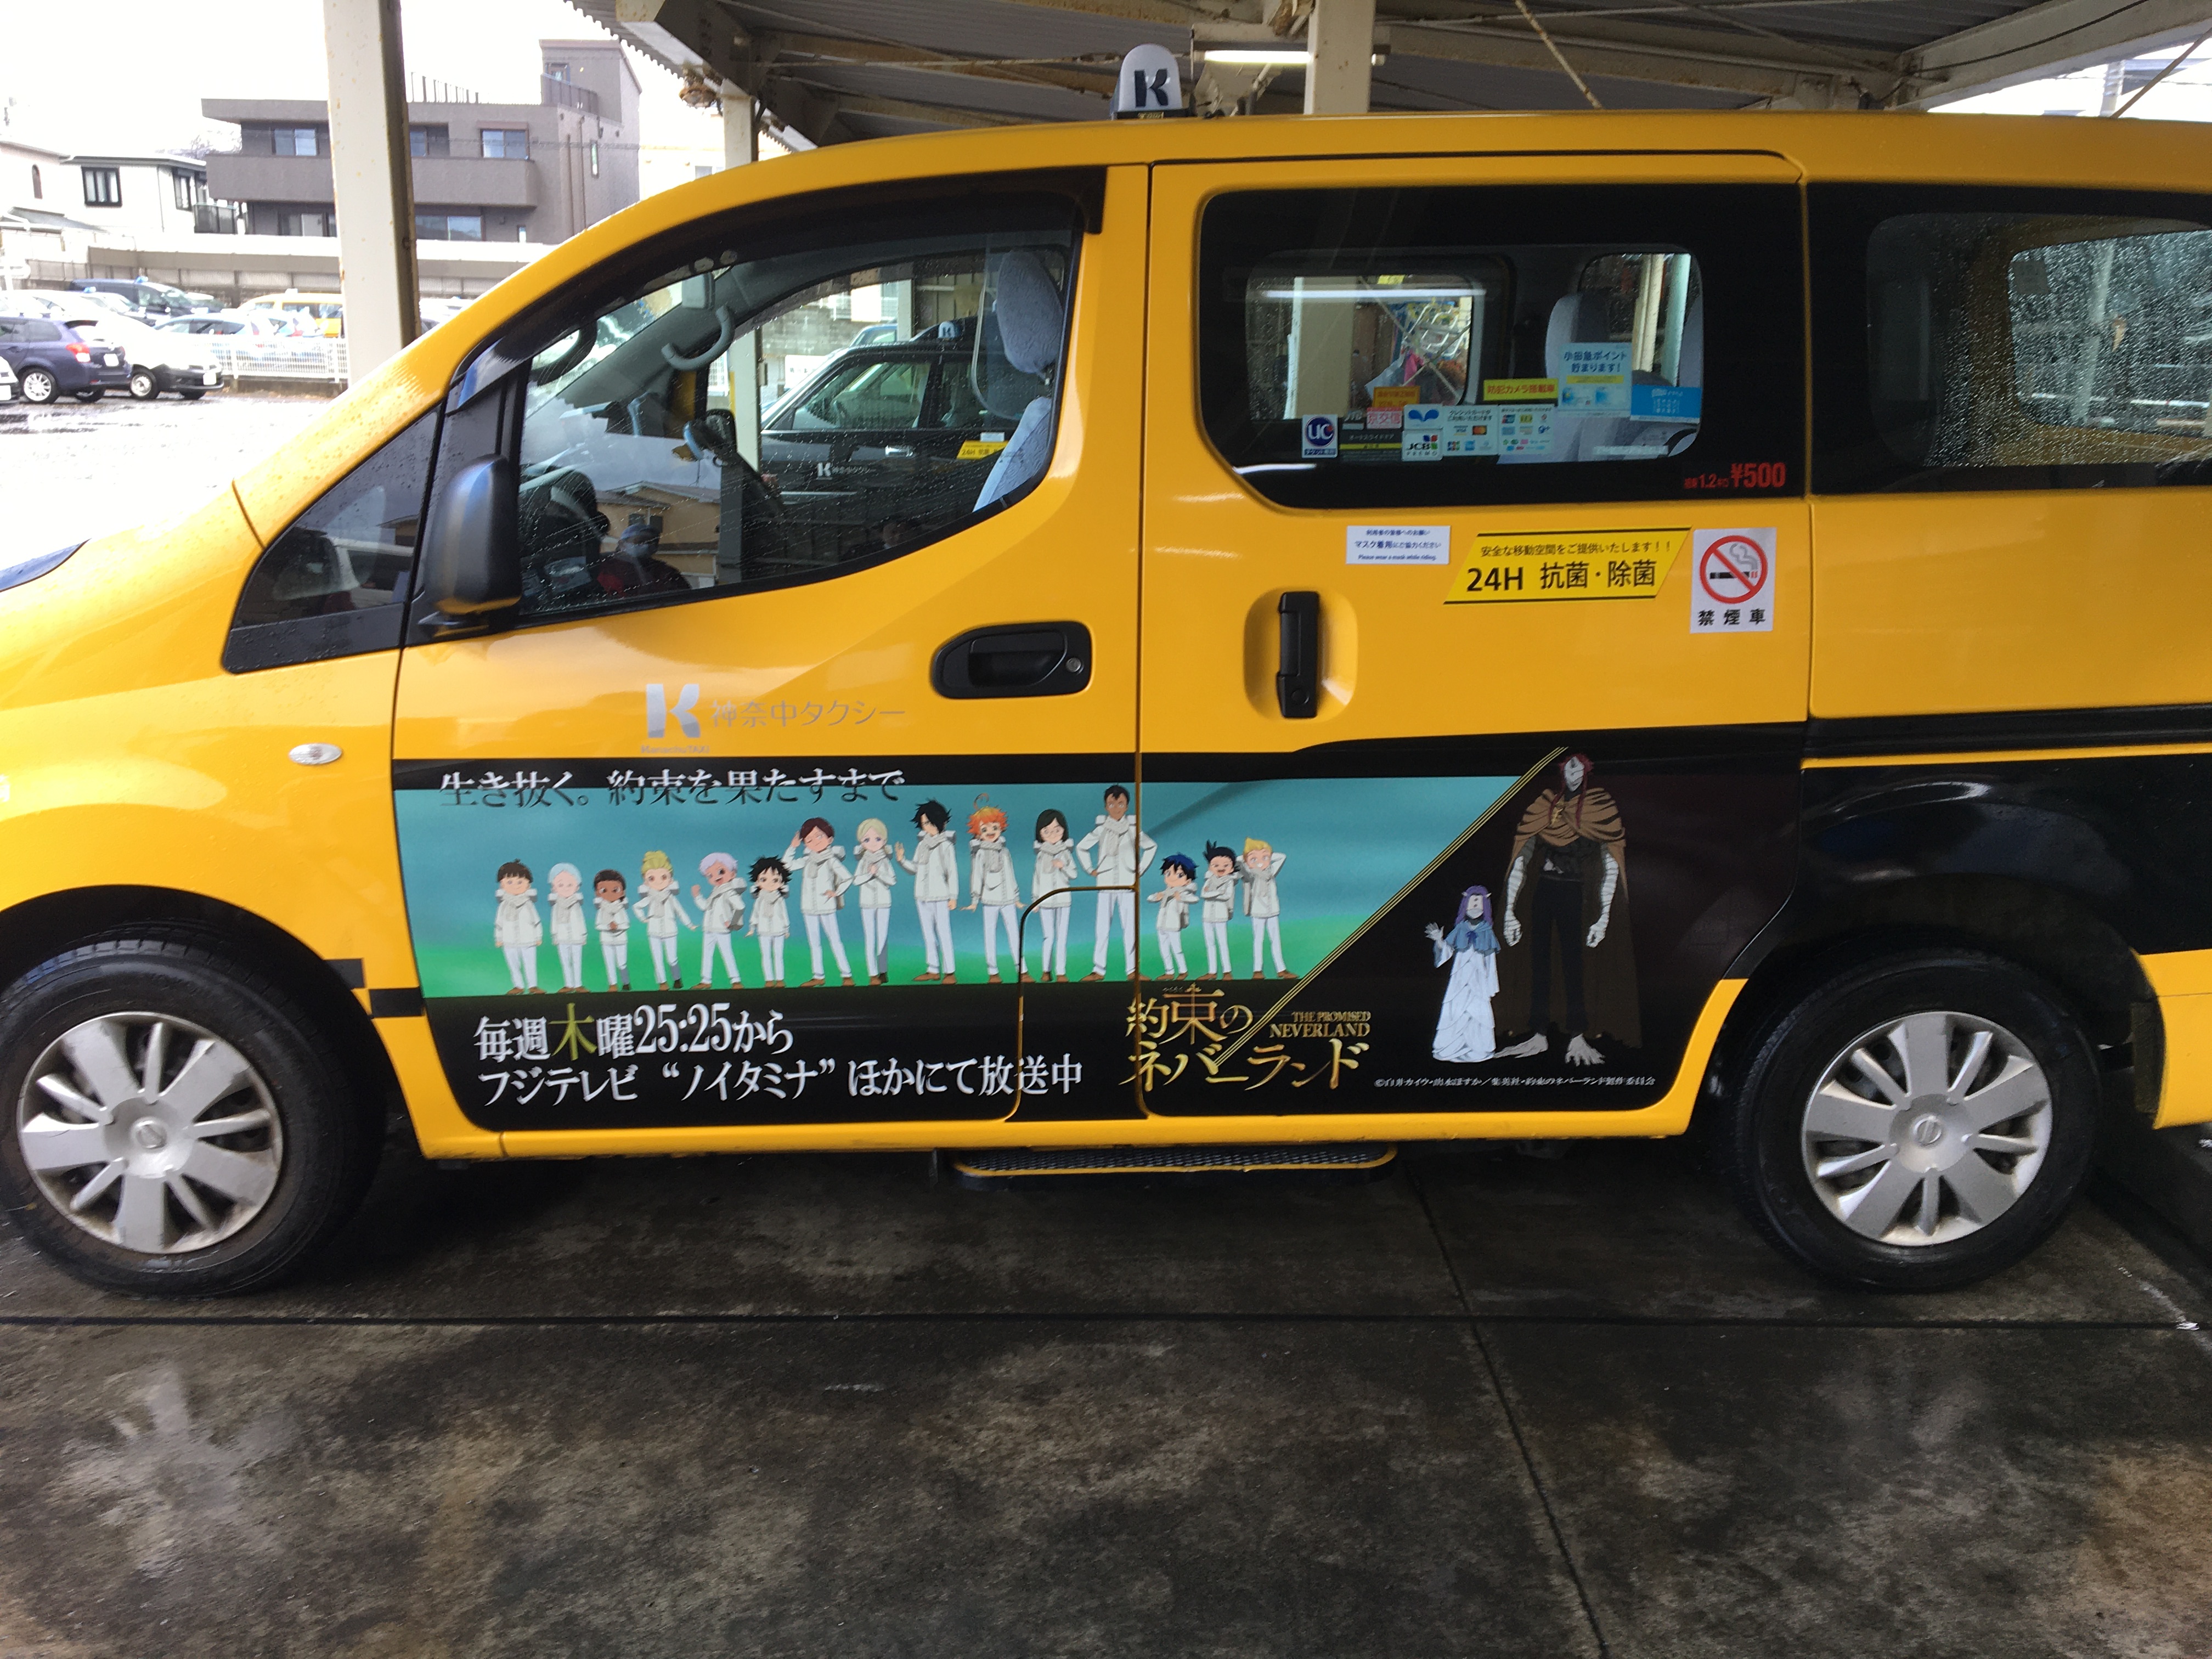 神奈中タクシー株式会社とアニメ 約束のネバーランド のコラボキャンペーン実施 神奈中タクシー株式会社のプレスリリース